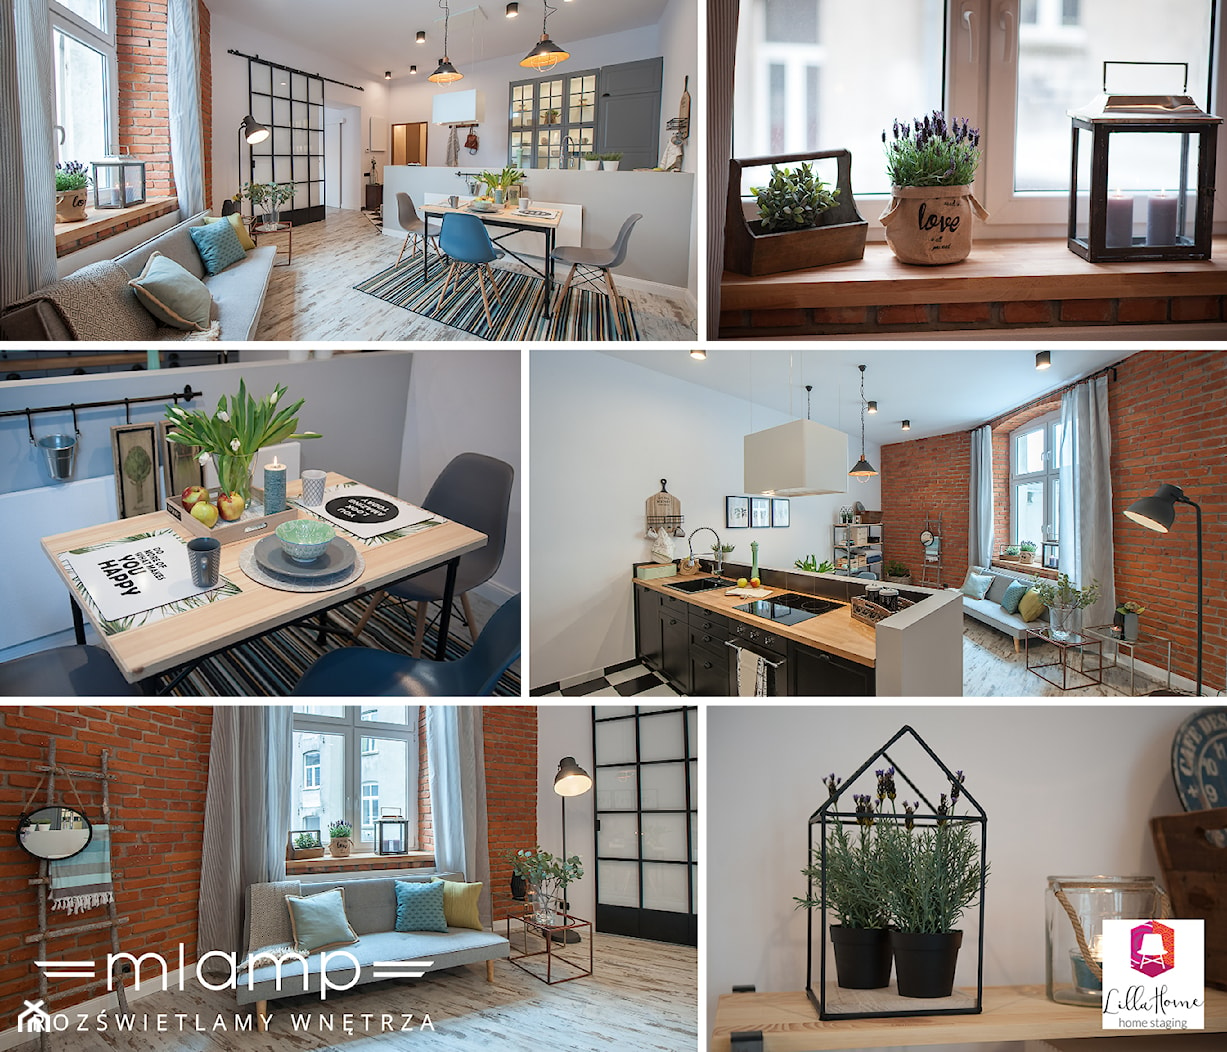 Eklektyczne mieszkanie z industrialnym oświetleniem - Kuchnia, styl nowoczesny - zdjęcie od =mlamp.pl= | rozświetlamy wnętrza - Homebook